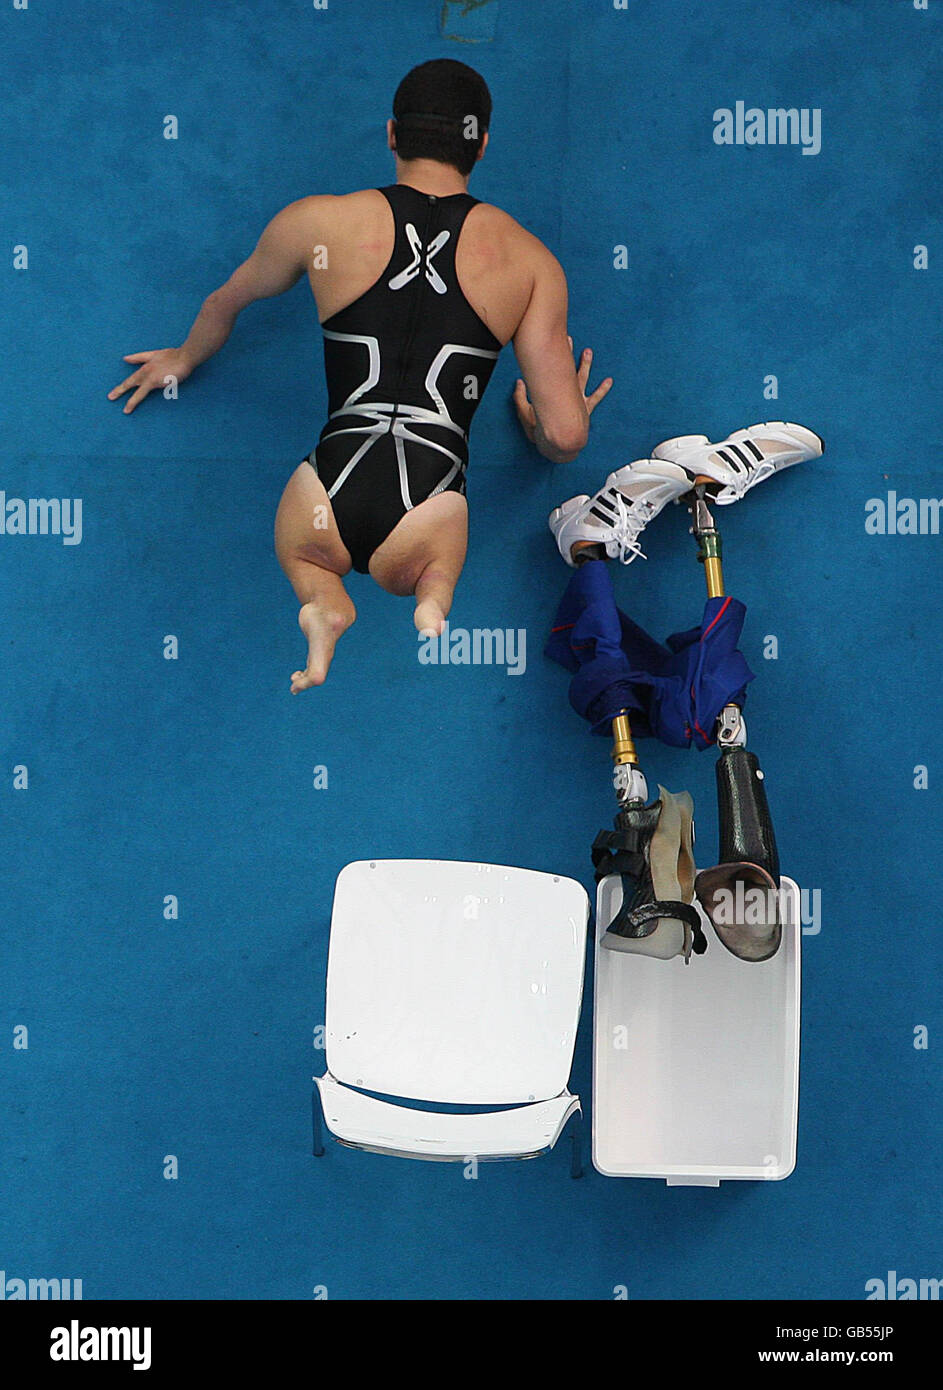 Paralympics - Paralympische Spiele In Peking 2008 - Tag Neun. Ein Konkurrent bereitet sich auf die Männer-50-M-Backstroke-S5-Vorläufe im National Acquatic Center, Peking, vor. Stockfoto